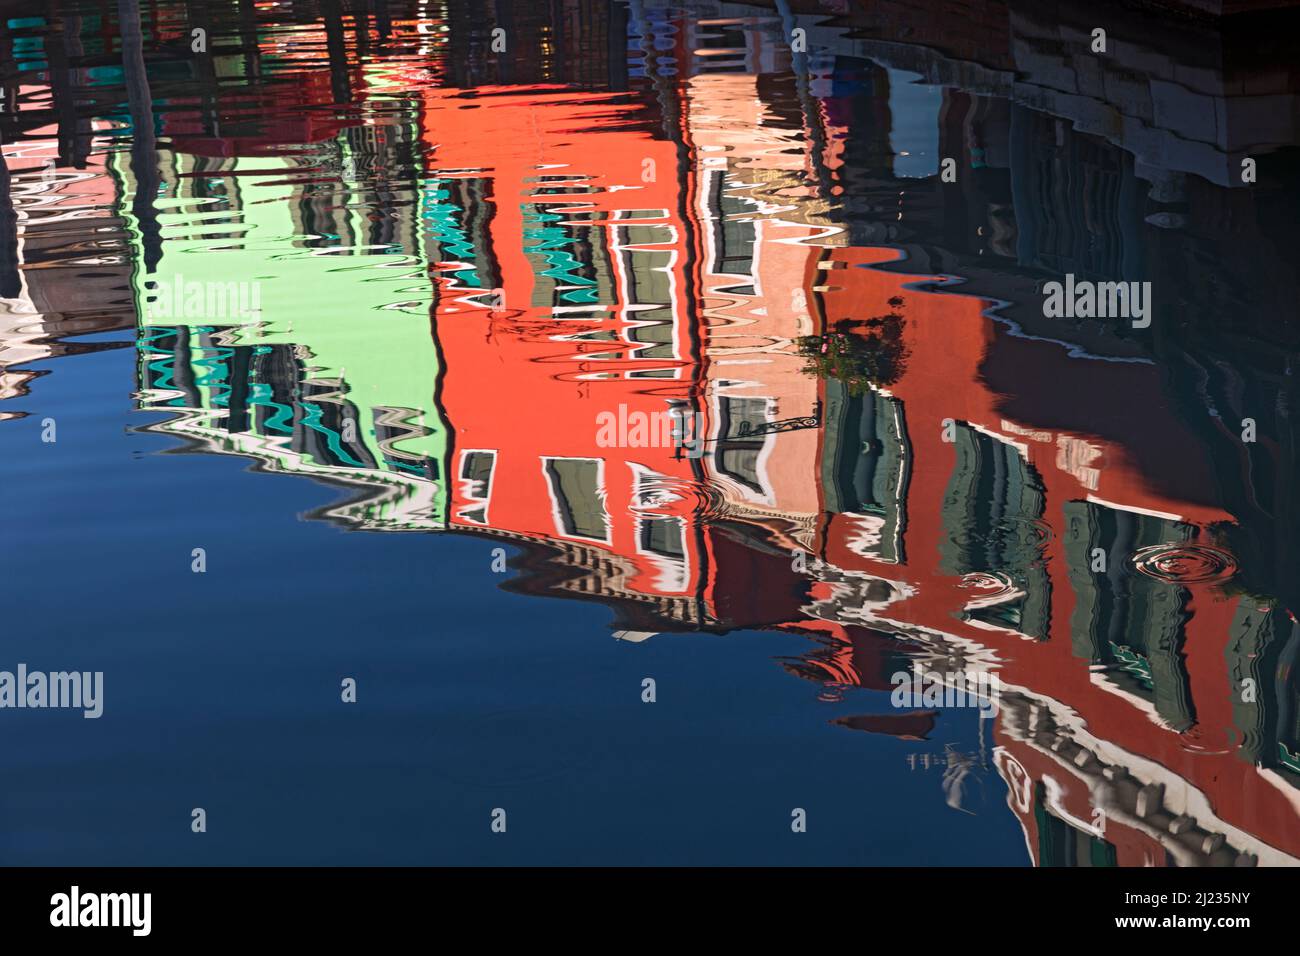 Italia, Venezia, case colorate sull'isola veneziana di Burano che si riflettono su un canale Foto Stock